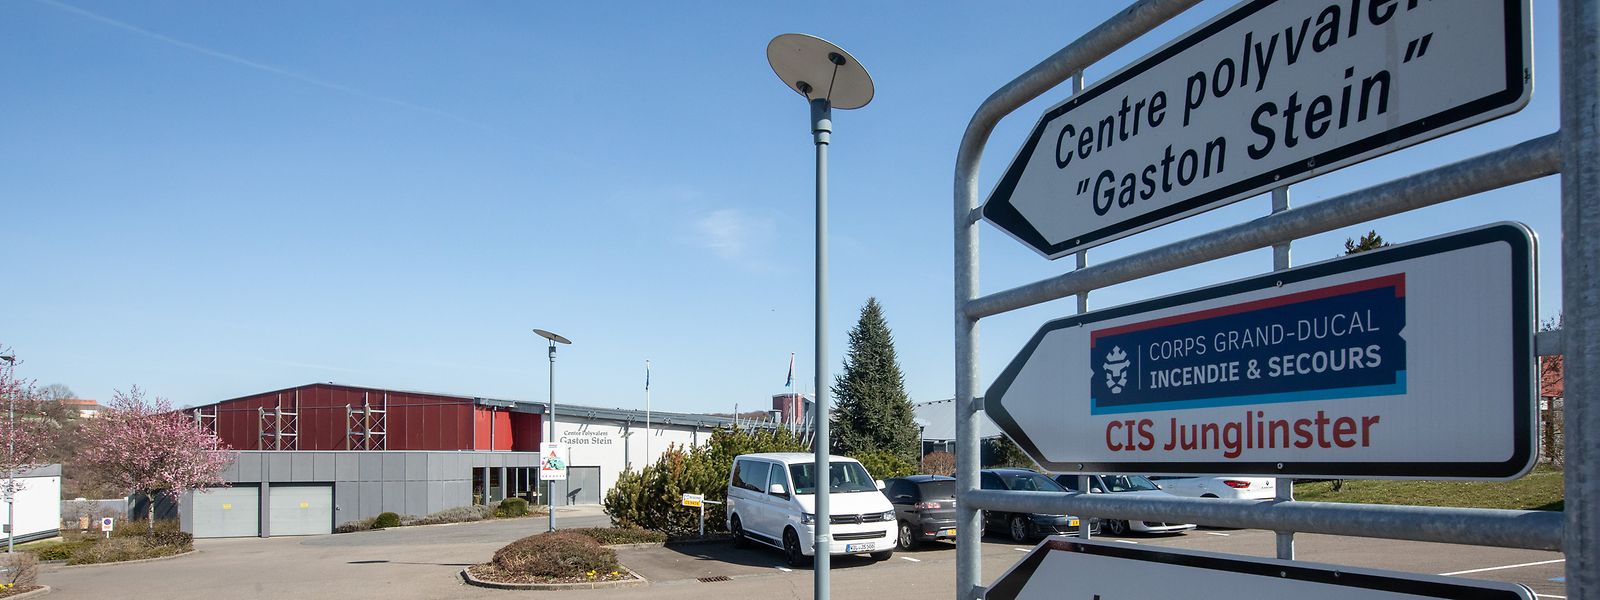 Ein Teil des Parkplatzes vor dem Centre polyvalent Gaston Stein wird für das Medizinzentrum zur Verfügung gestellt, so hat es die Gemeinde im Februar mit der Fondation HRS vereinbart.